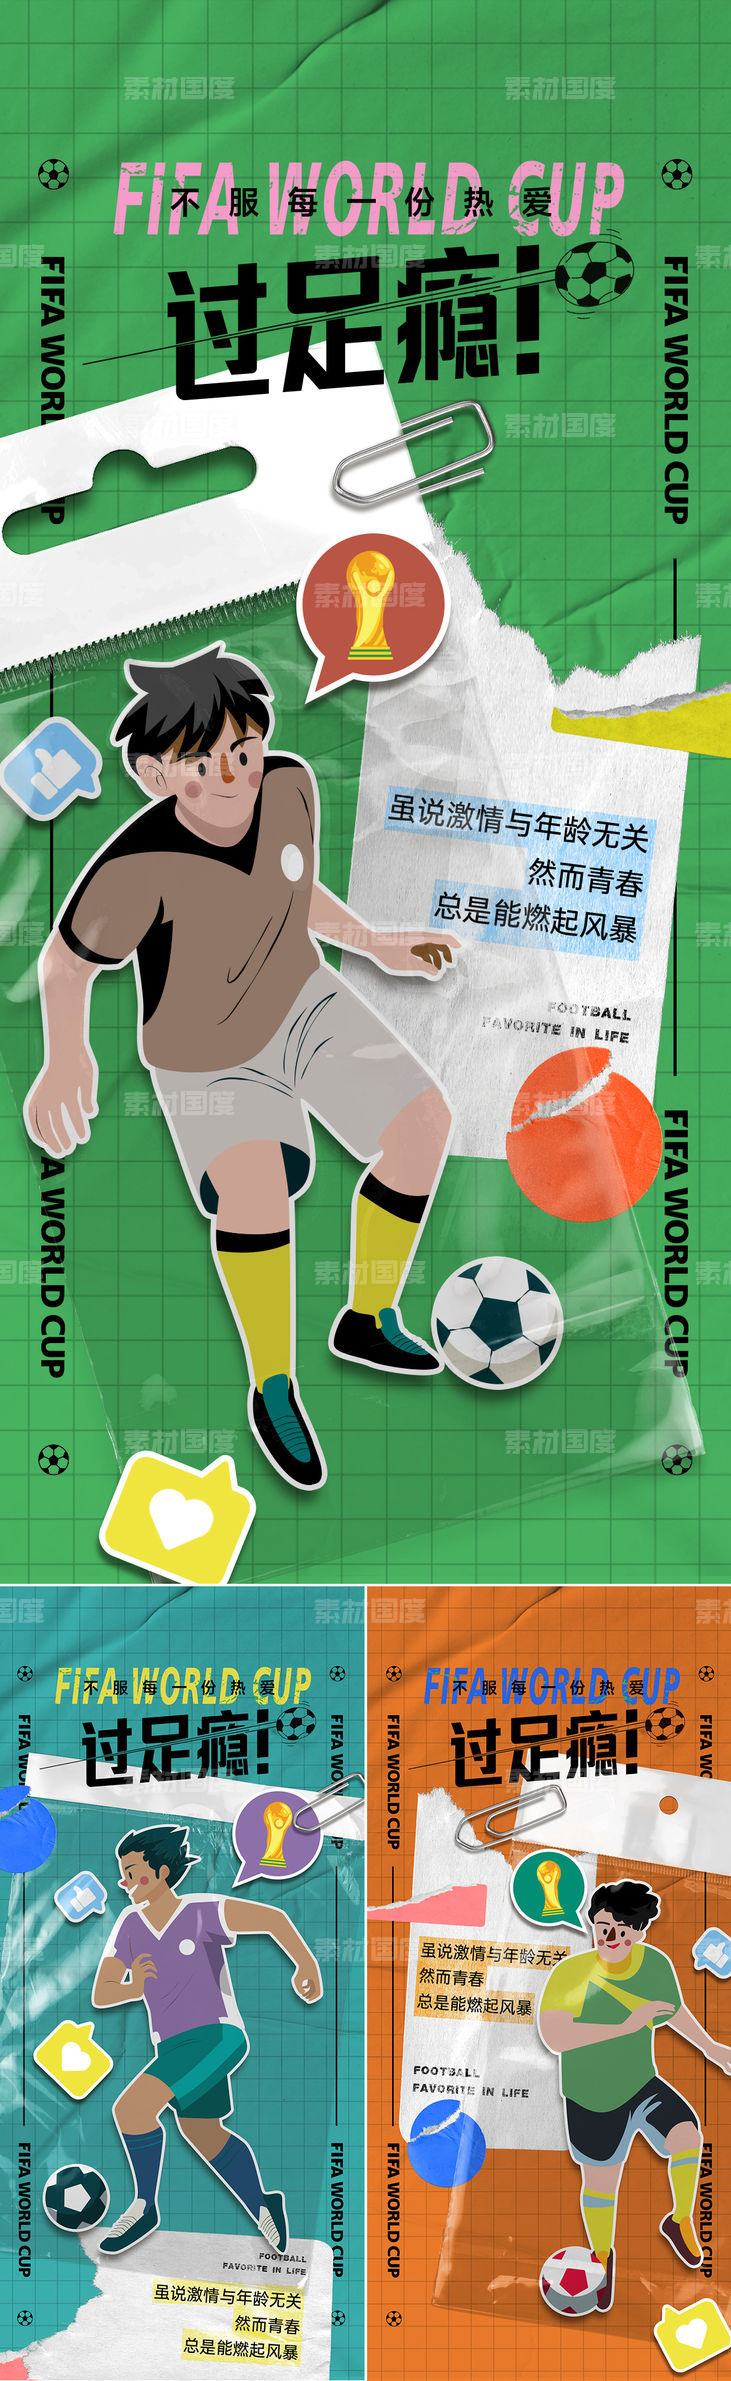 2022世界杯拼接创意海报